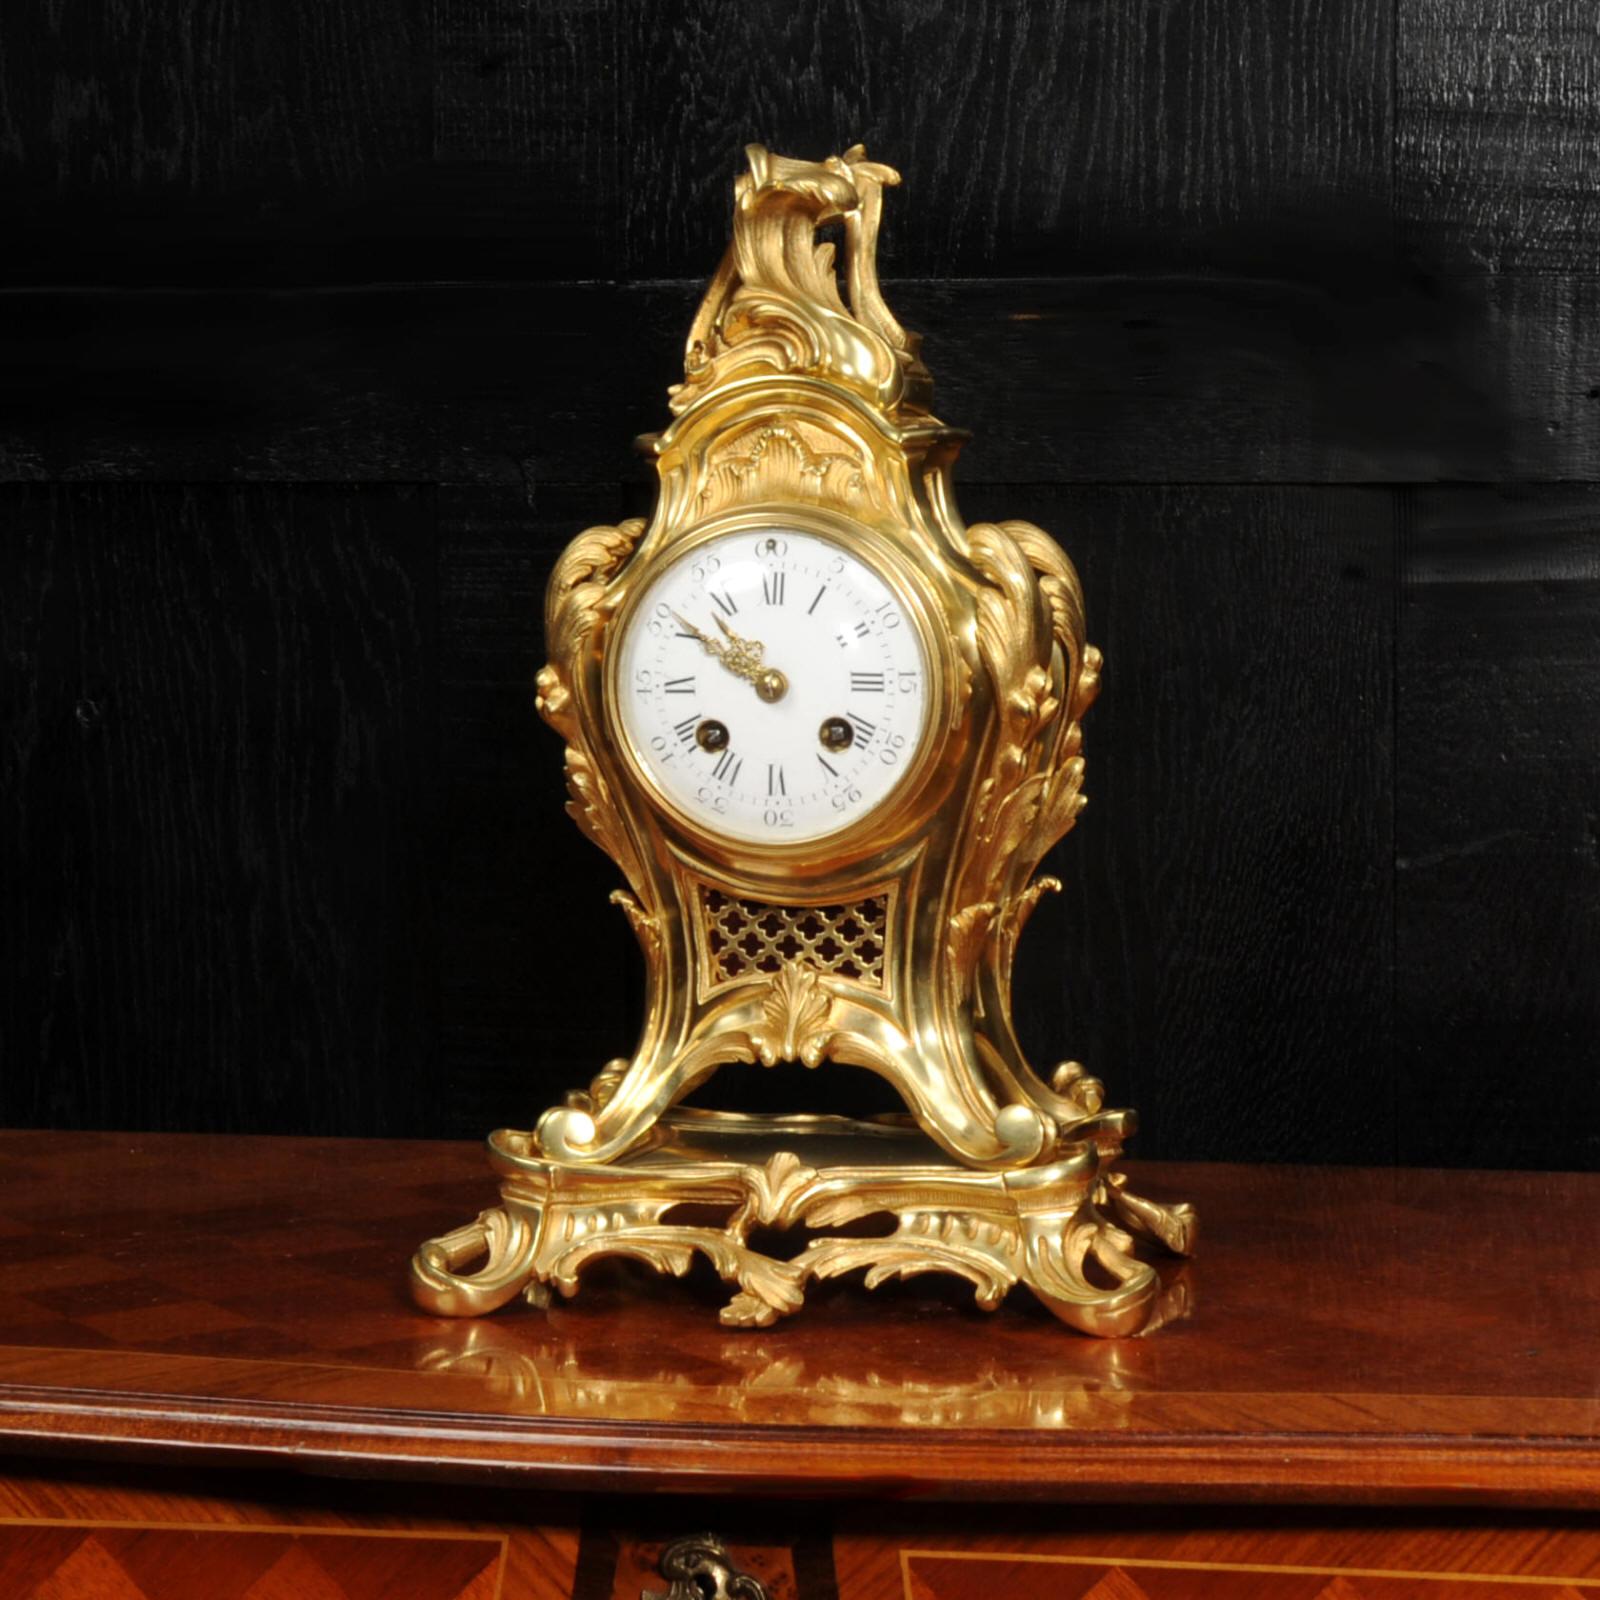 Une superbe horloge rococo française en bronze doré, vers 1880. Il est magnifiquement modelé dans le style rococo de Louis XV en bronze doré. Magnifique boîtier en forme de ballon avec des acanthes sur les épaules et une fleur rococo sur le dessus.